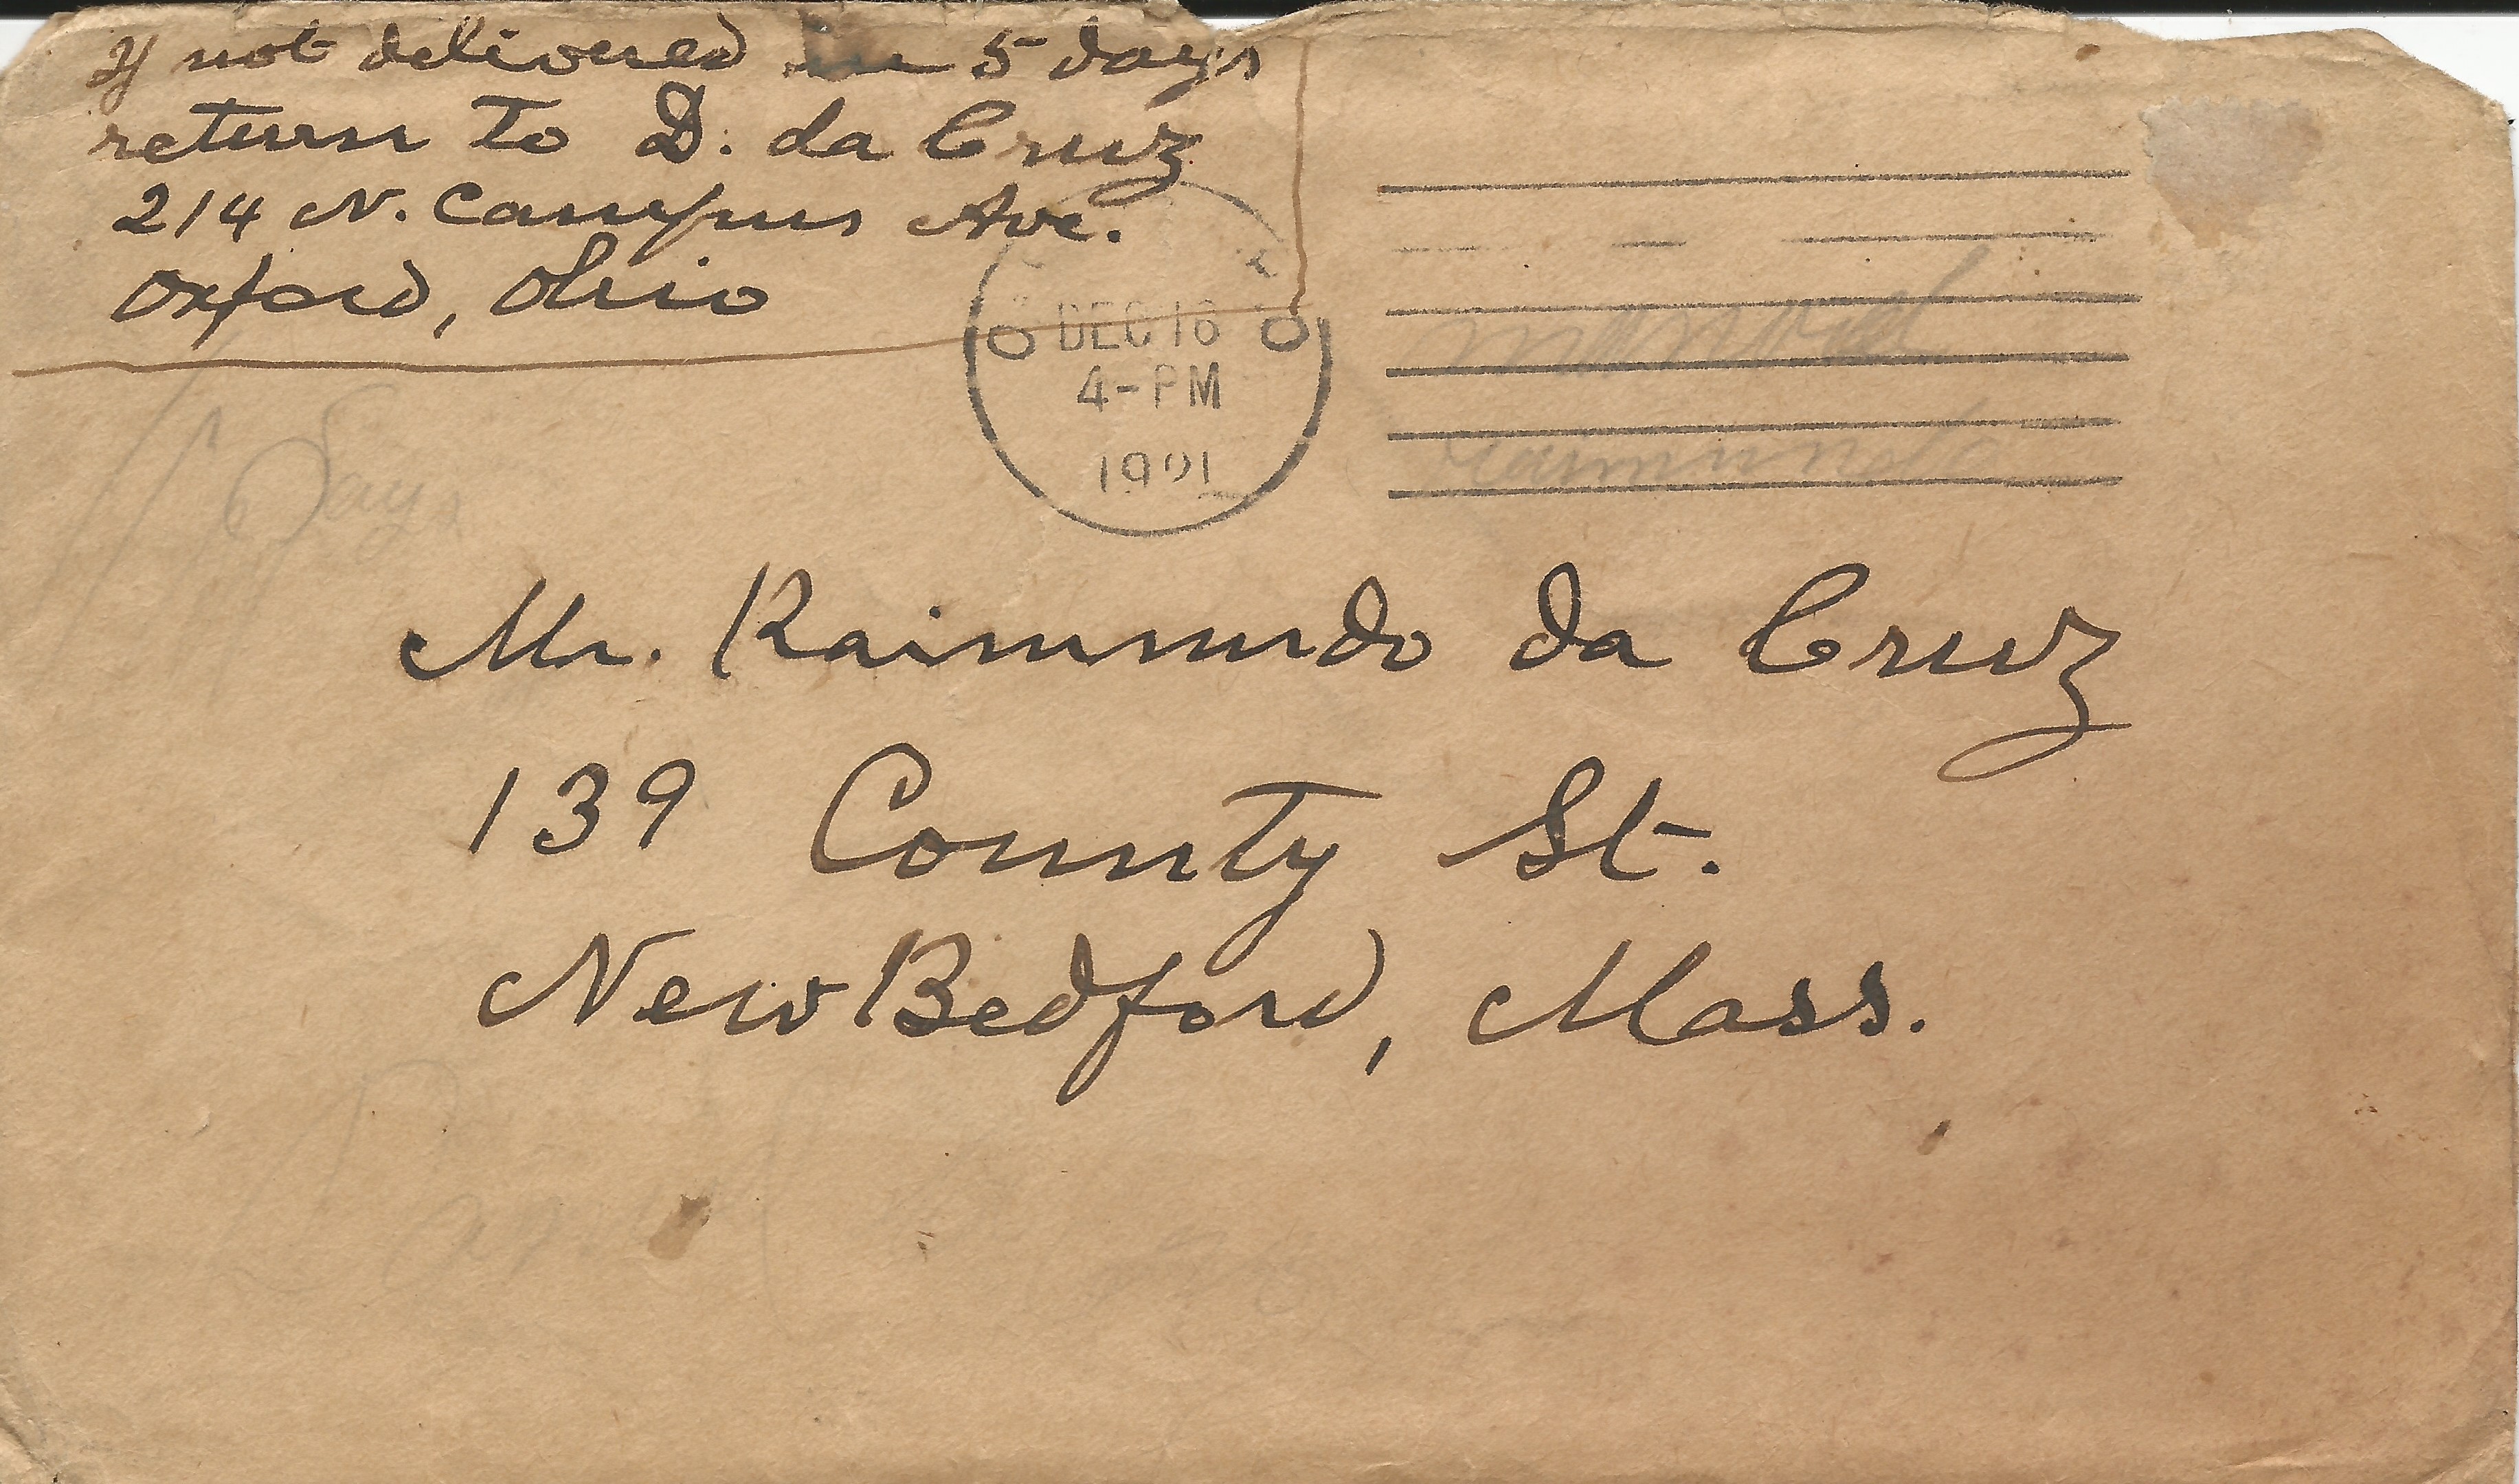 1921 letter